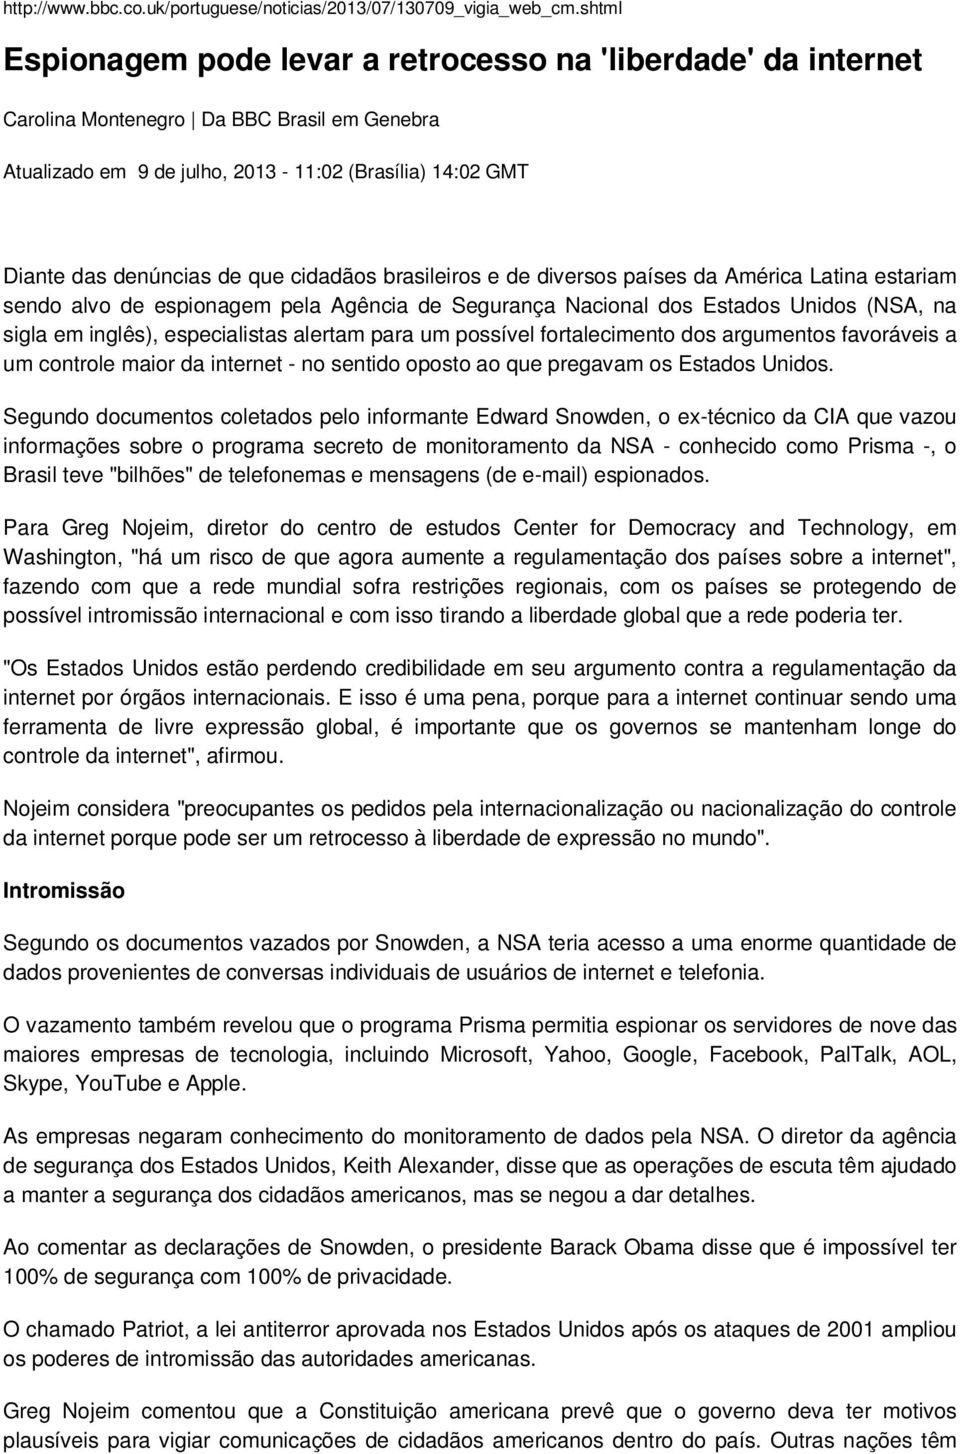 cidadãos brasileiros e de diversos países da América Latina estariam sendo alvo de espionagem pela Agência de Segurança Nacional dos Estados Unidos (NSA, na sigla em inglês), especialistas alertam